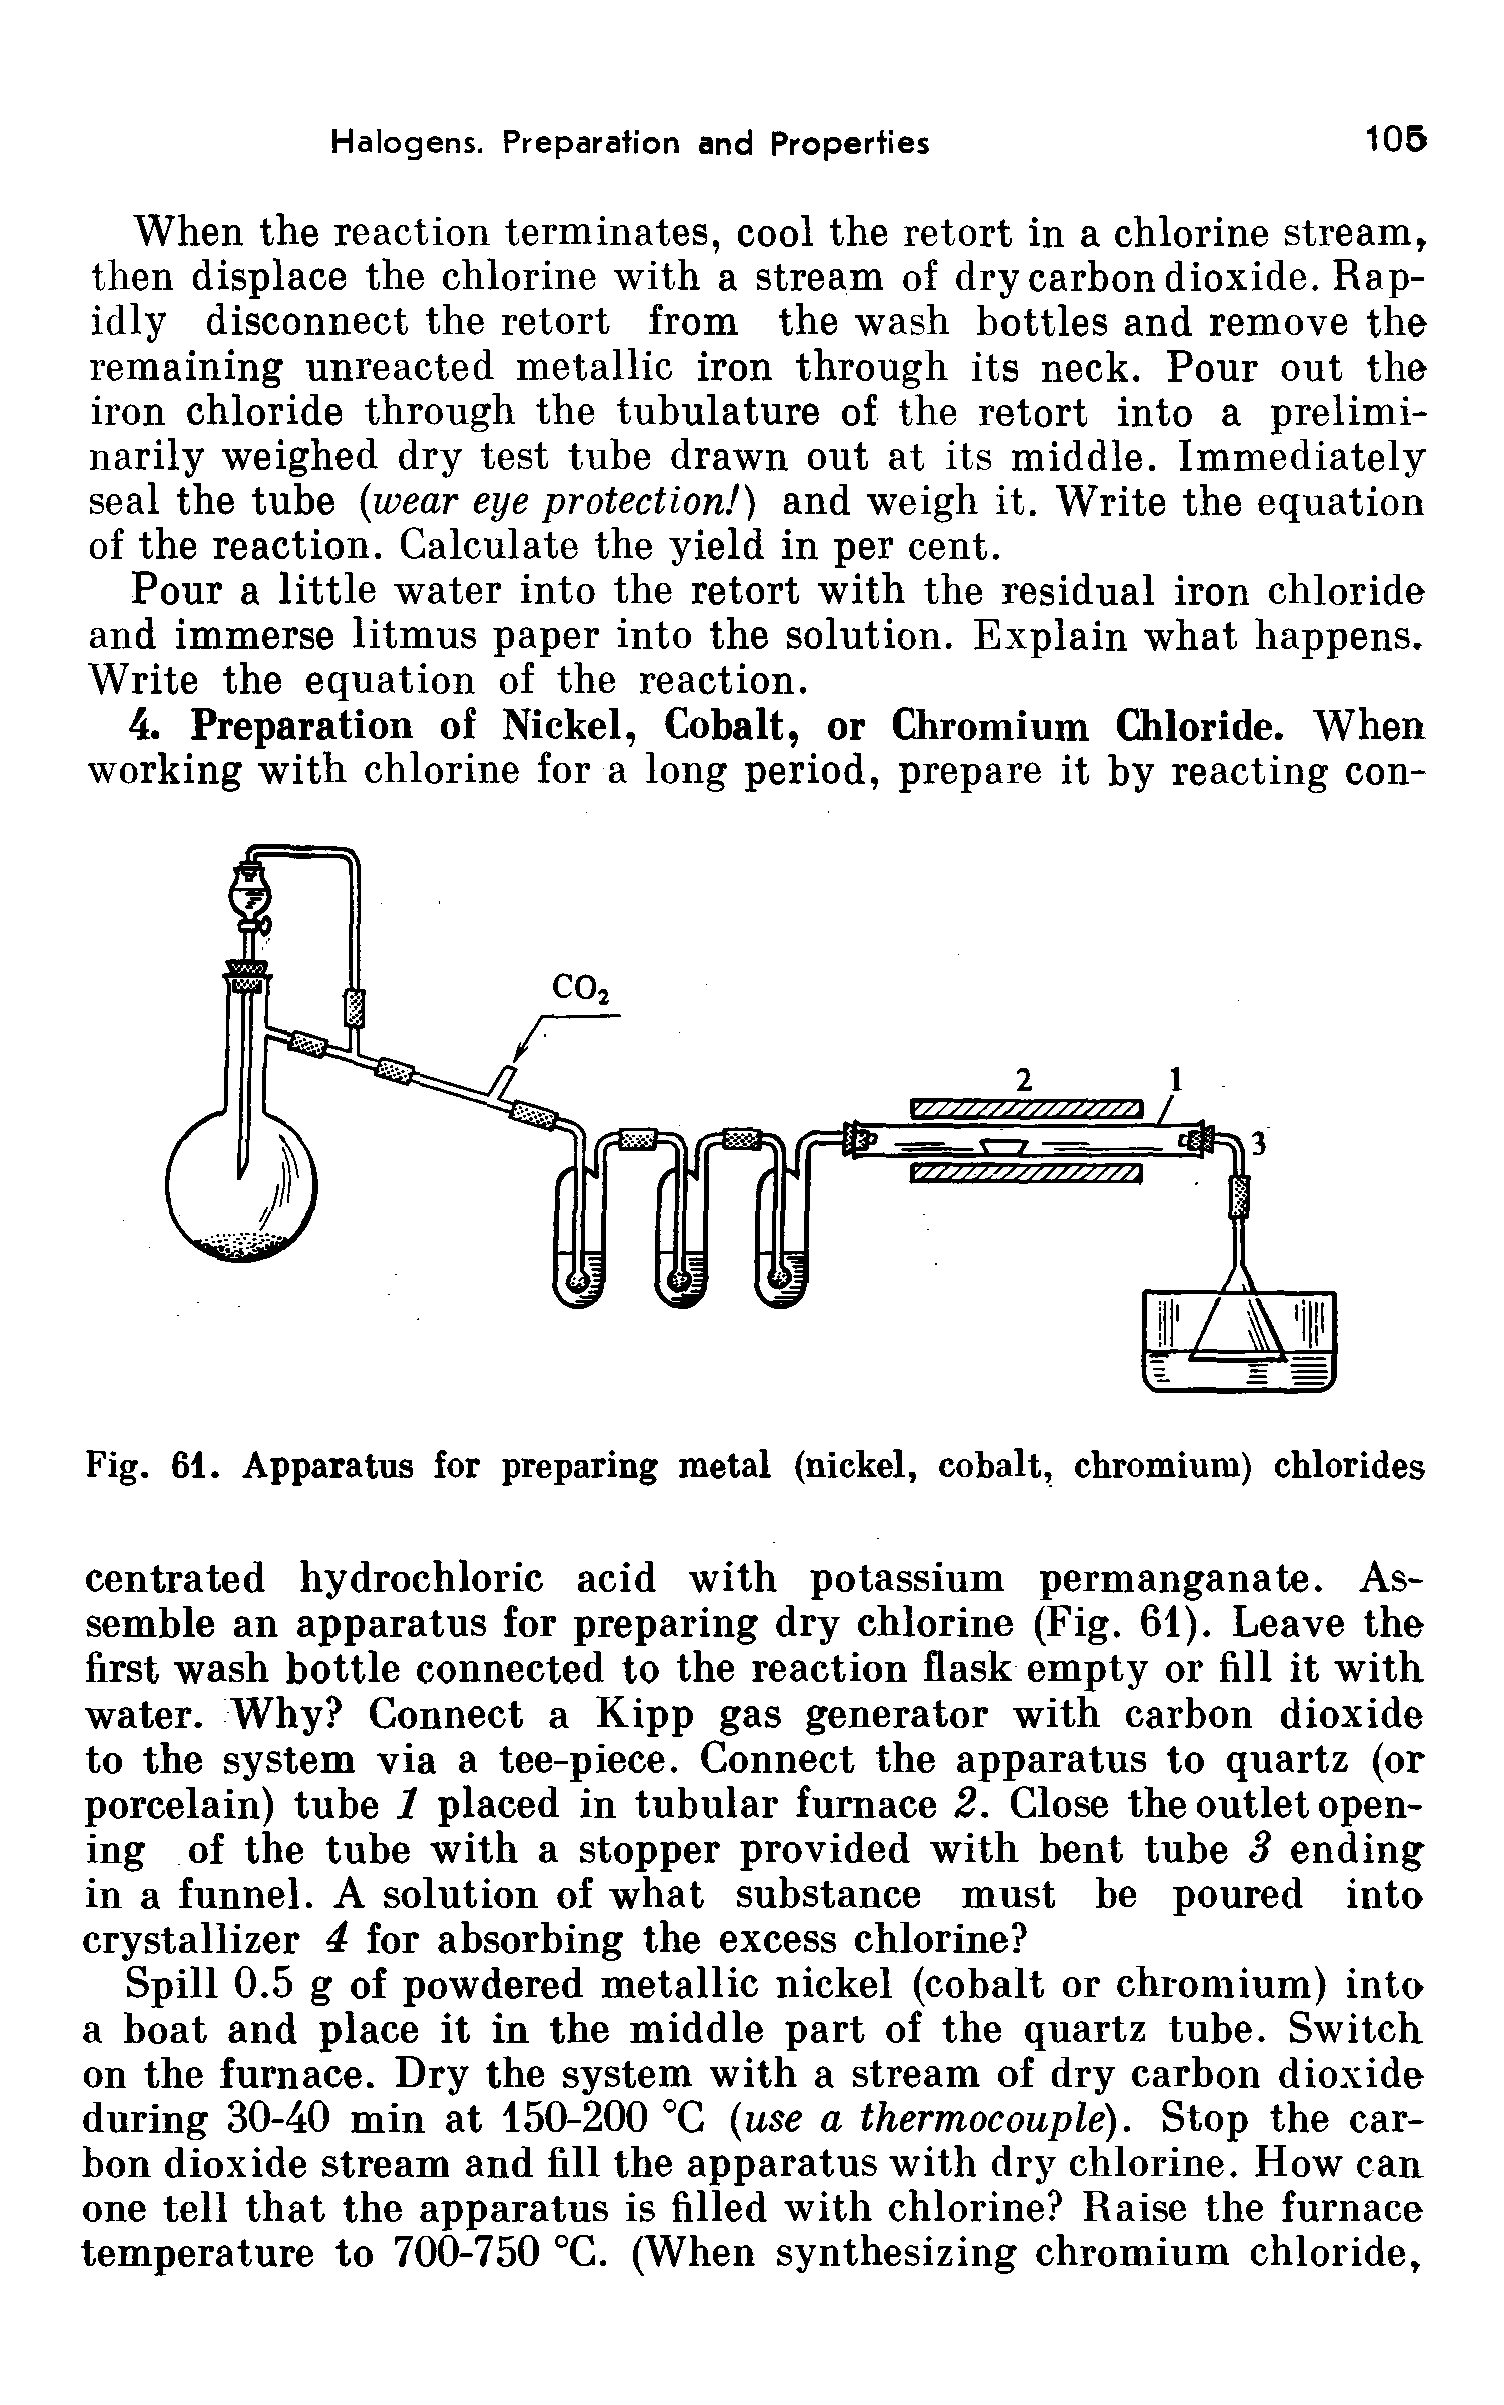 Fig. 61. Apparatus for preparing metal (nickel, cobalt, chromium) chlorides...